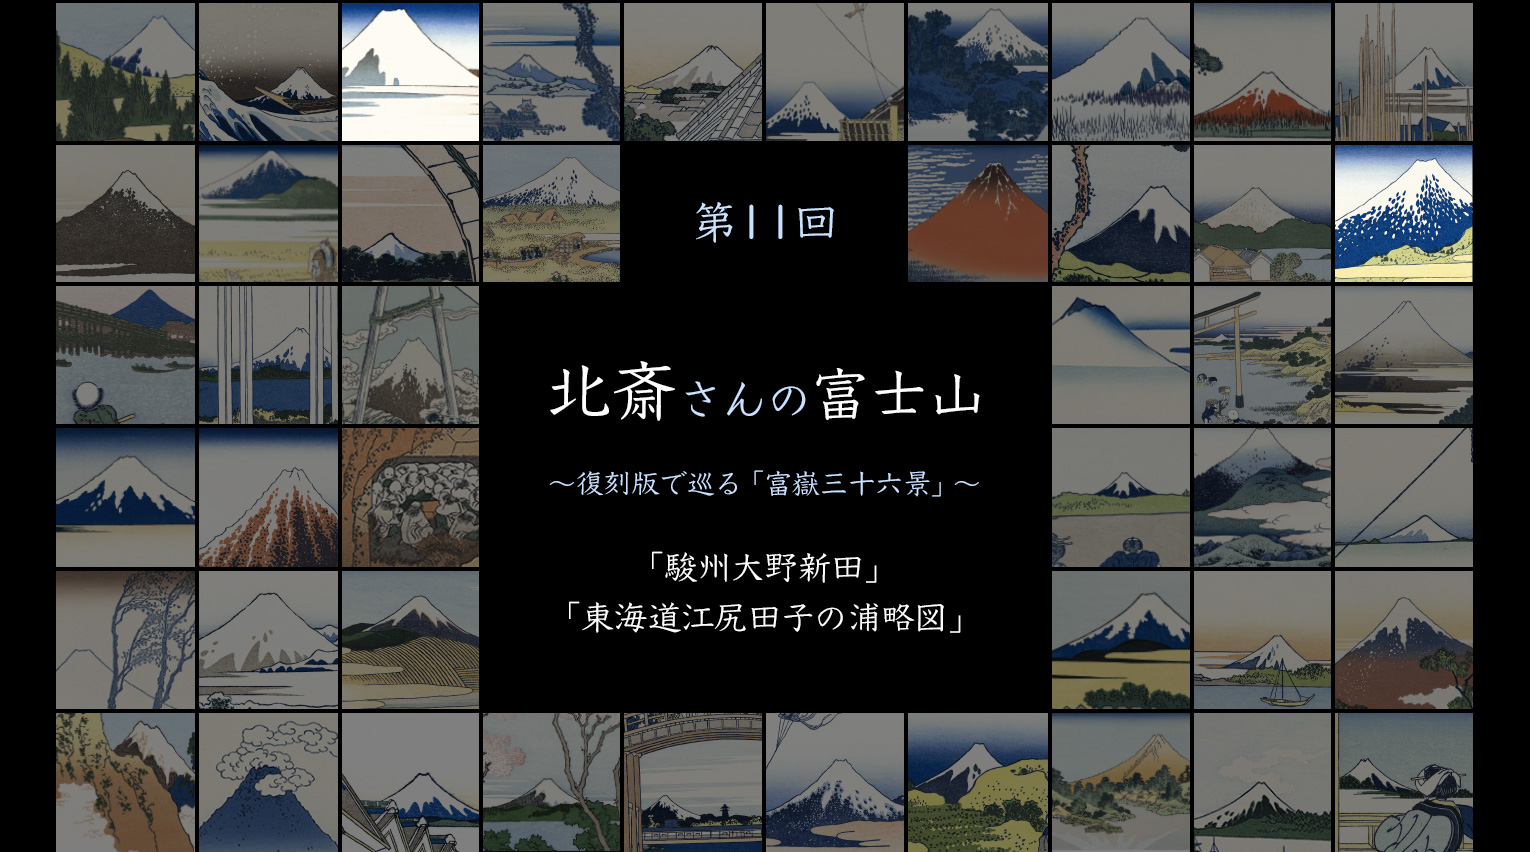 北斎さんの富士山 〜復刻版で見る「富嶽三十六景」〜 (11)【PR】